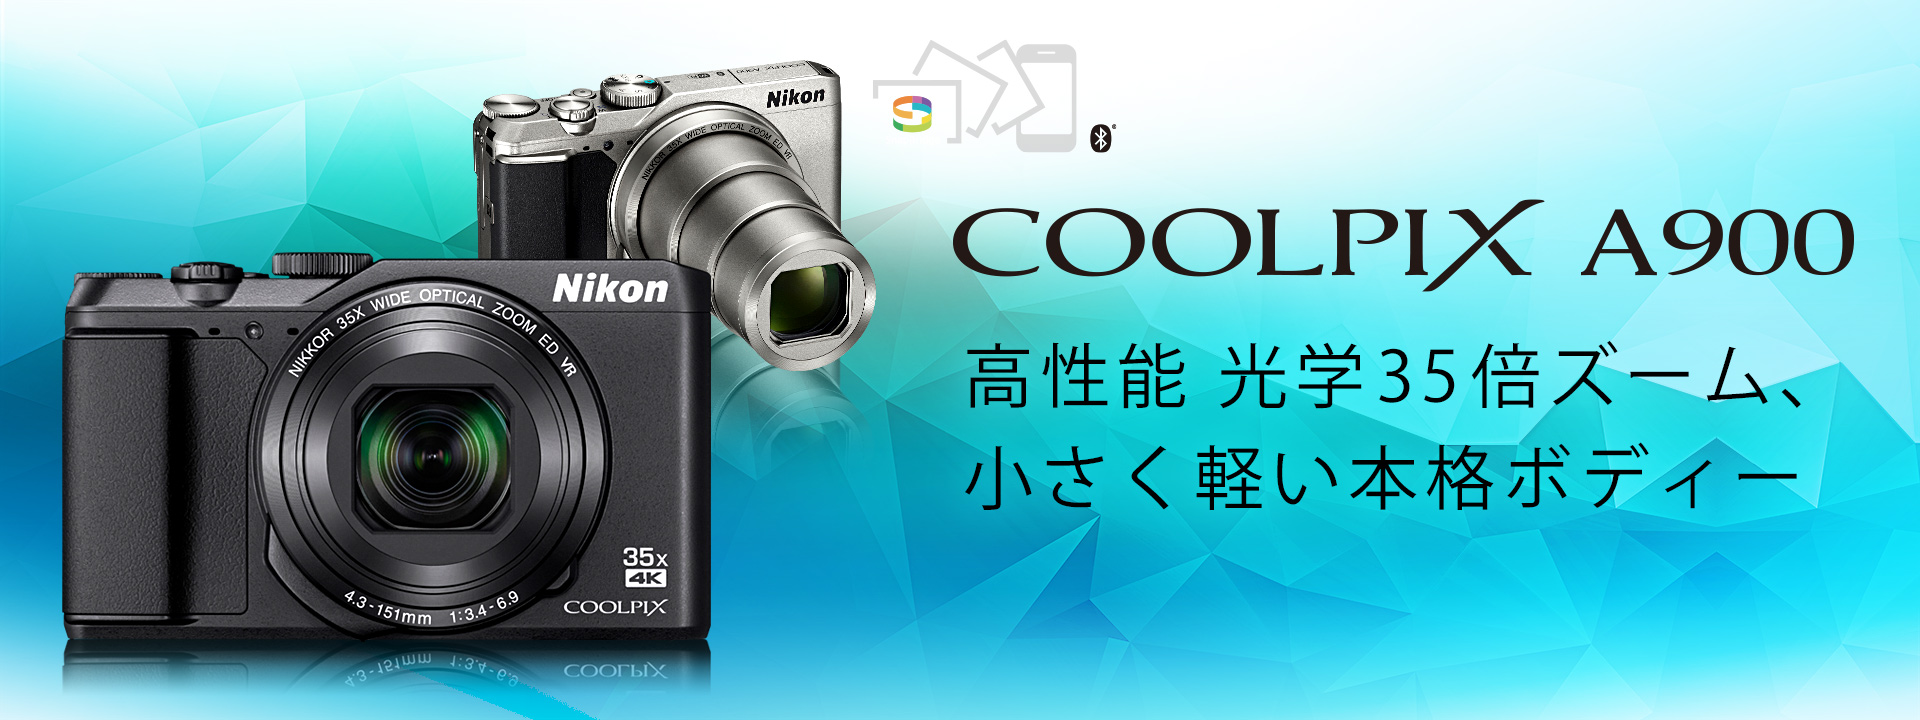 ★新品未使用★ Nikon COOLPIX A900